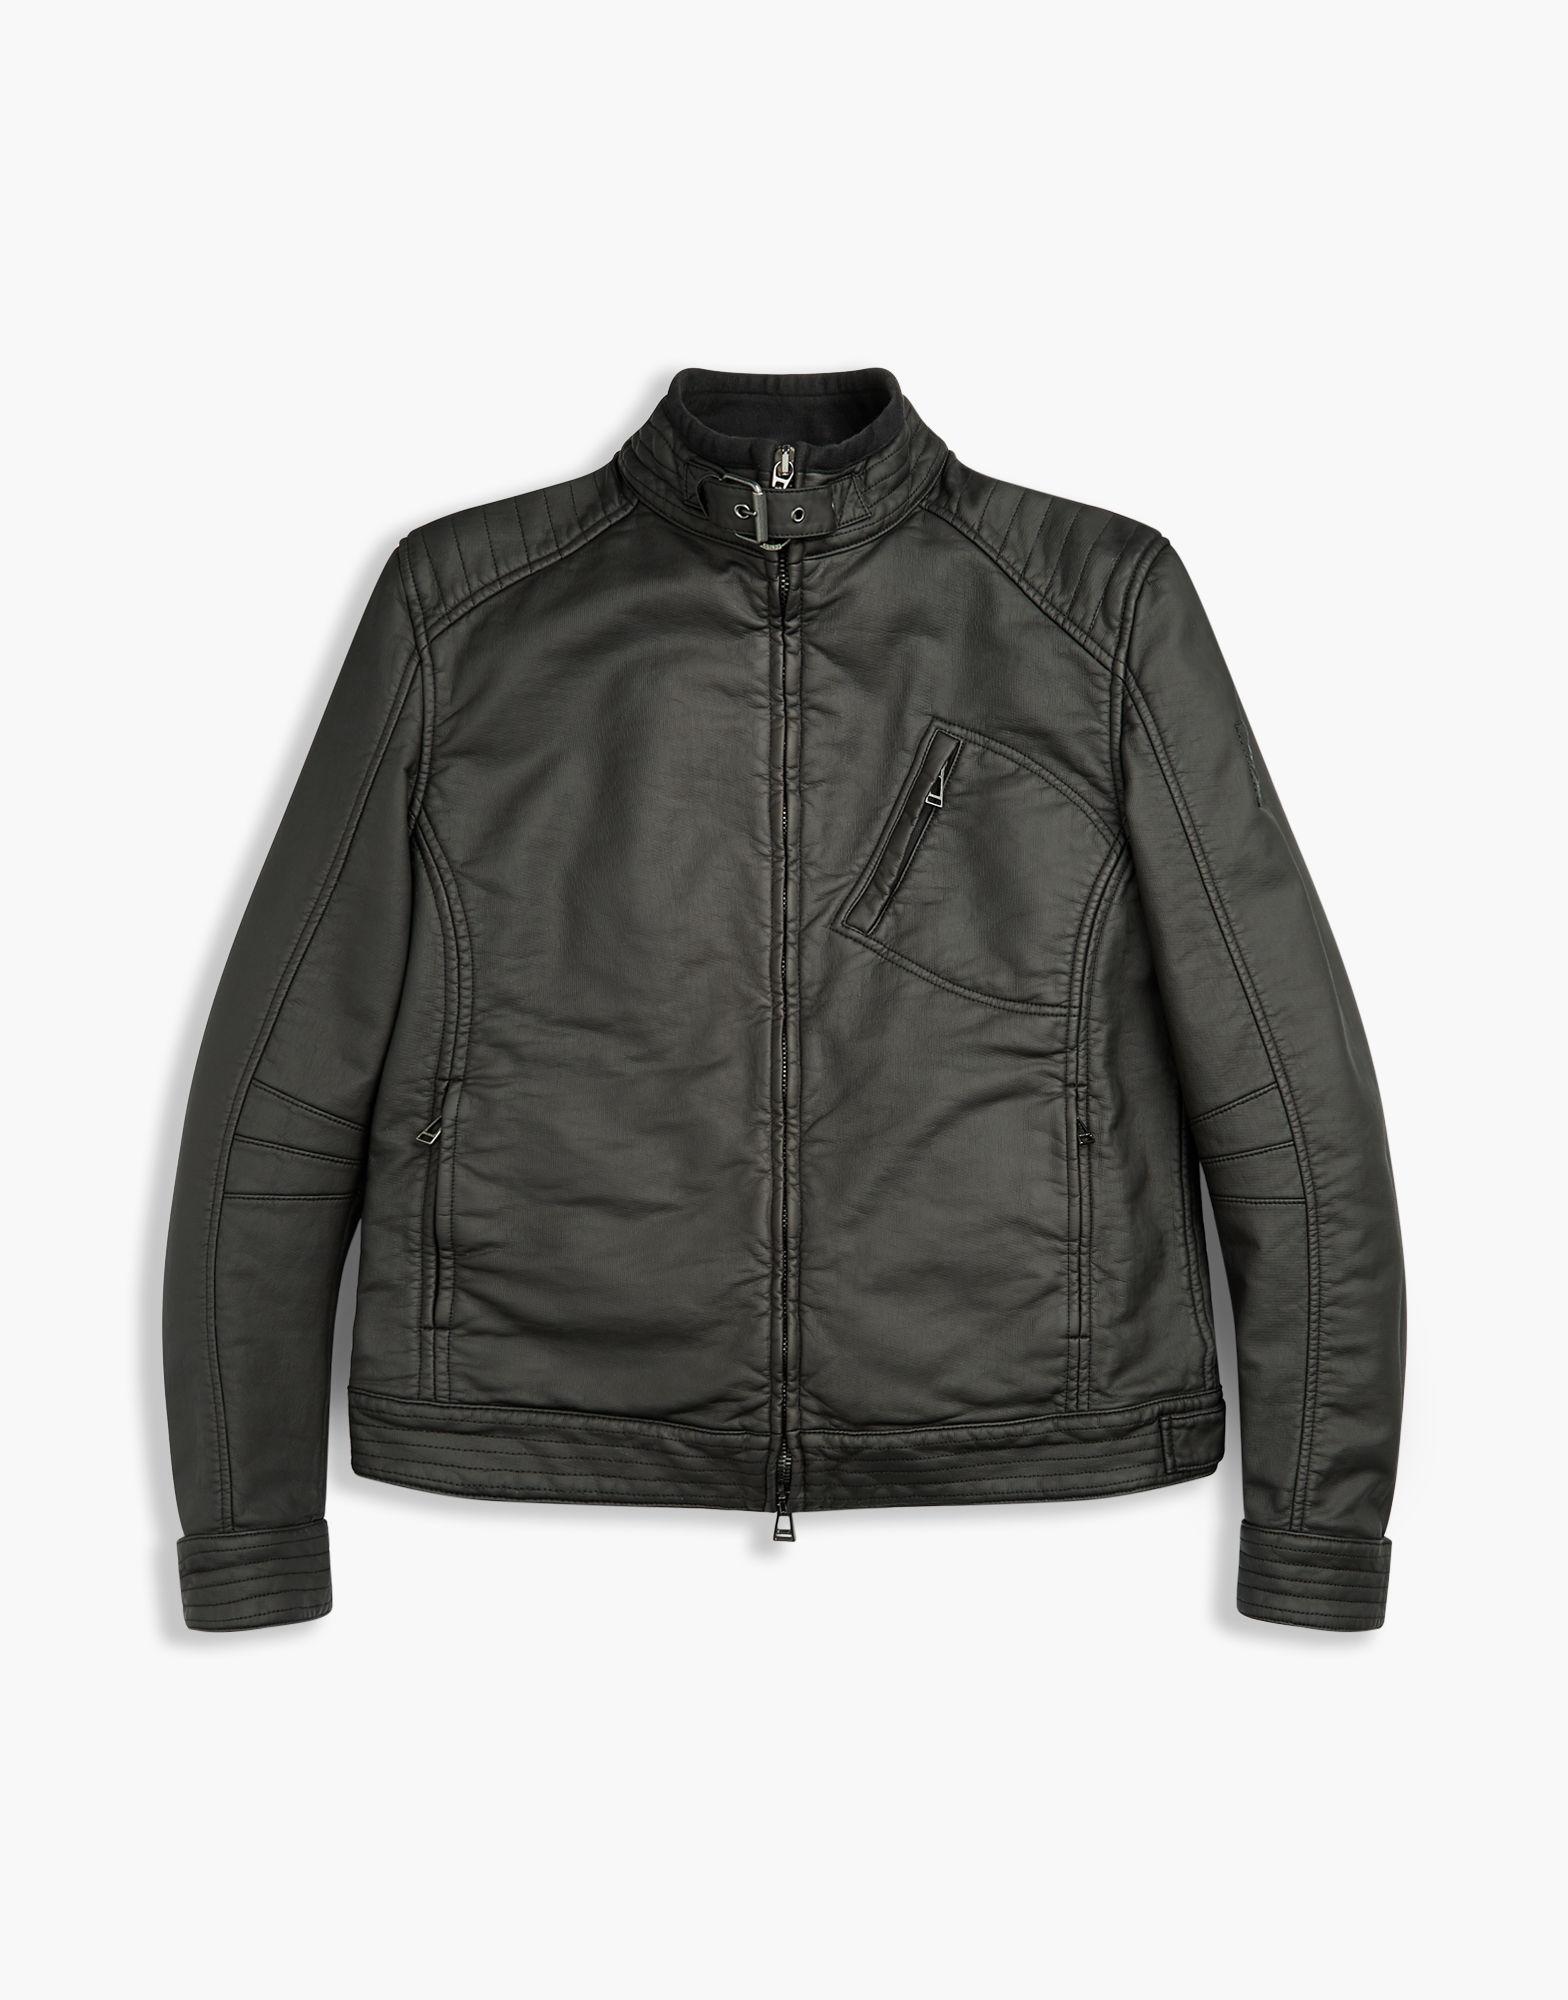 Belstaff Cotton H Racer Jacket in Black for Men - Lyst